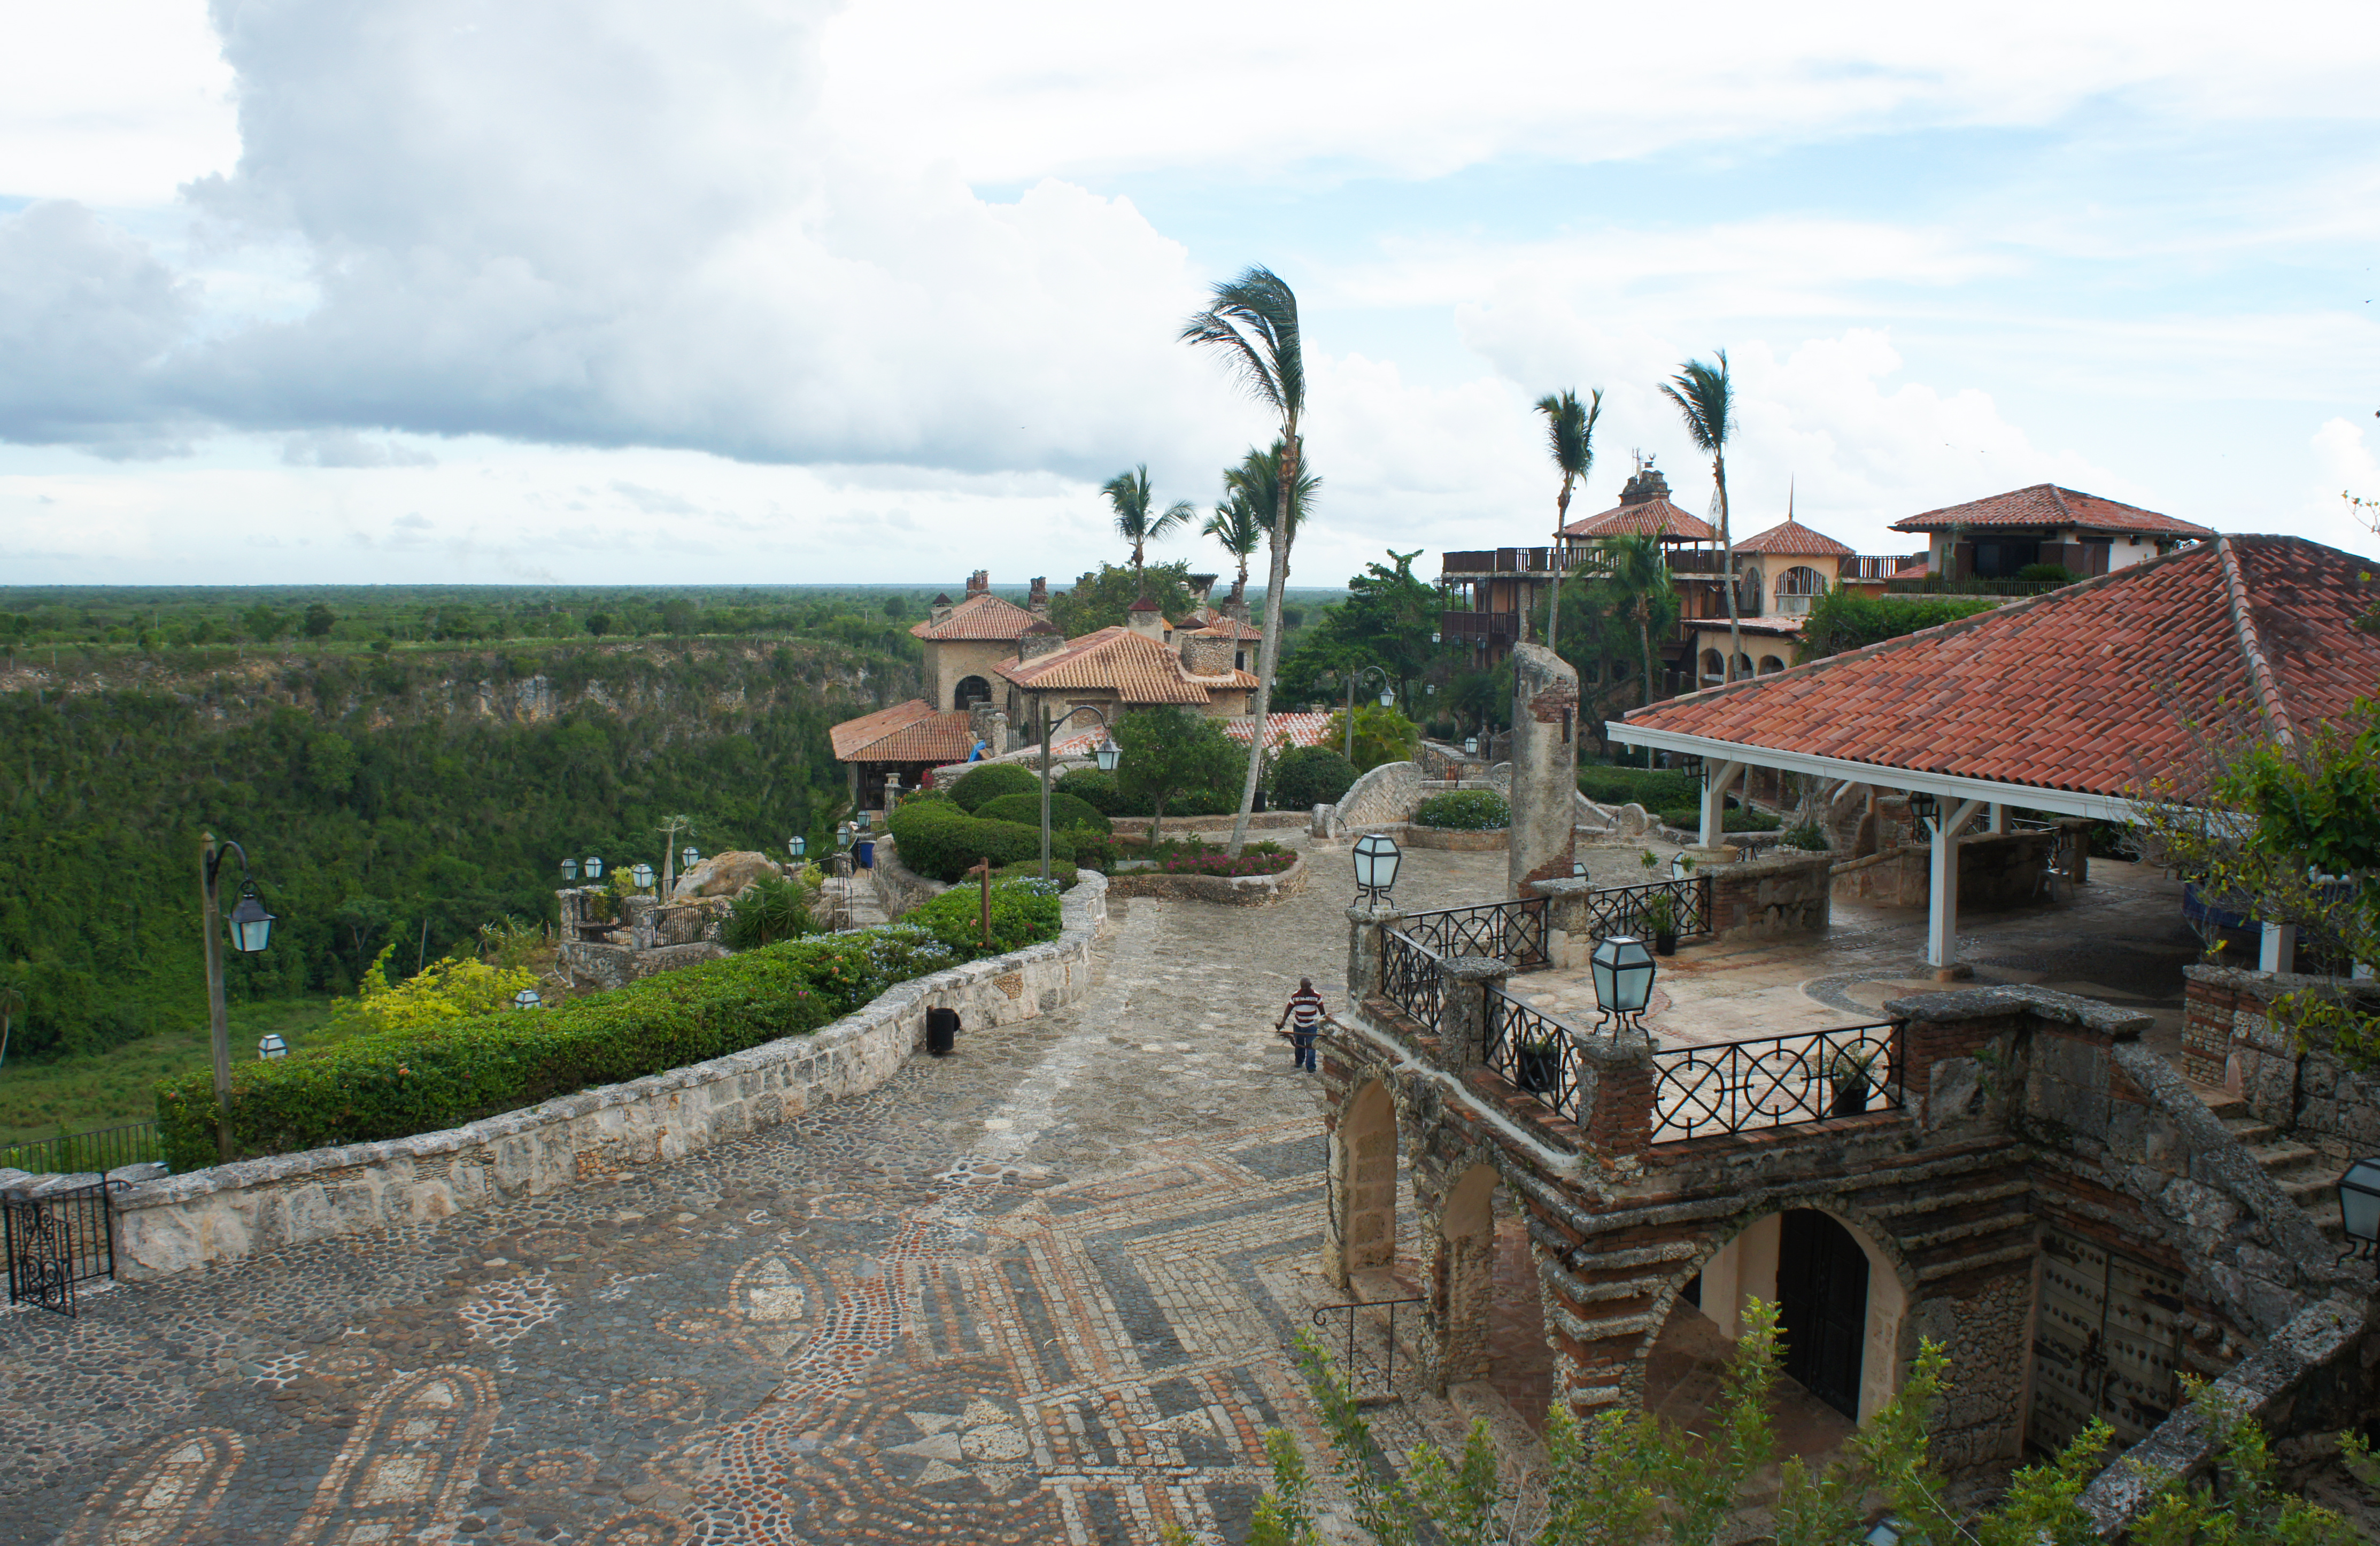 Casa de Campo Luxury Resort | All Inclusive Dominican Republic | Celebrity Kardashian Vacation | Altos de Chavon River